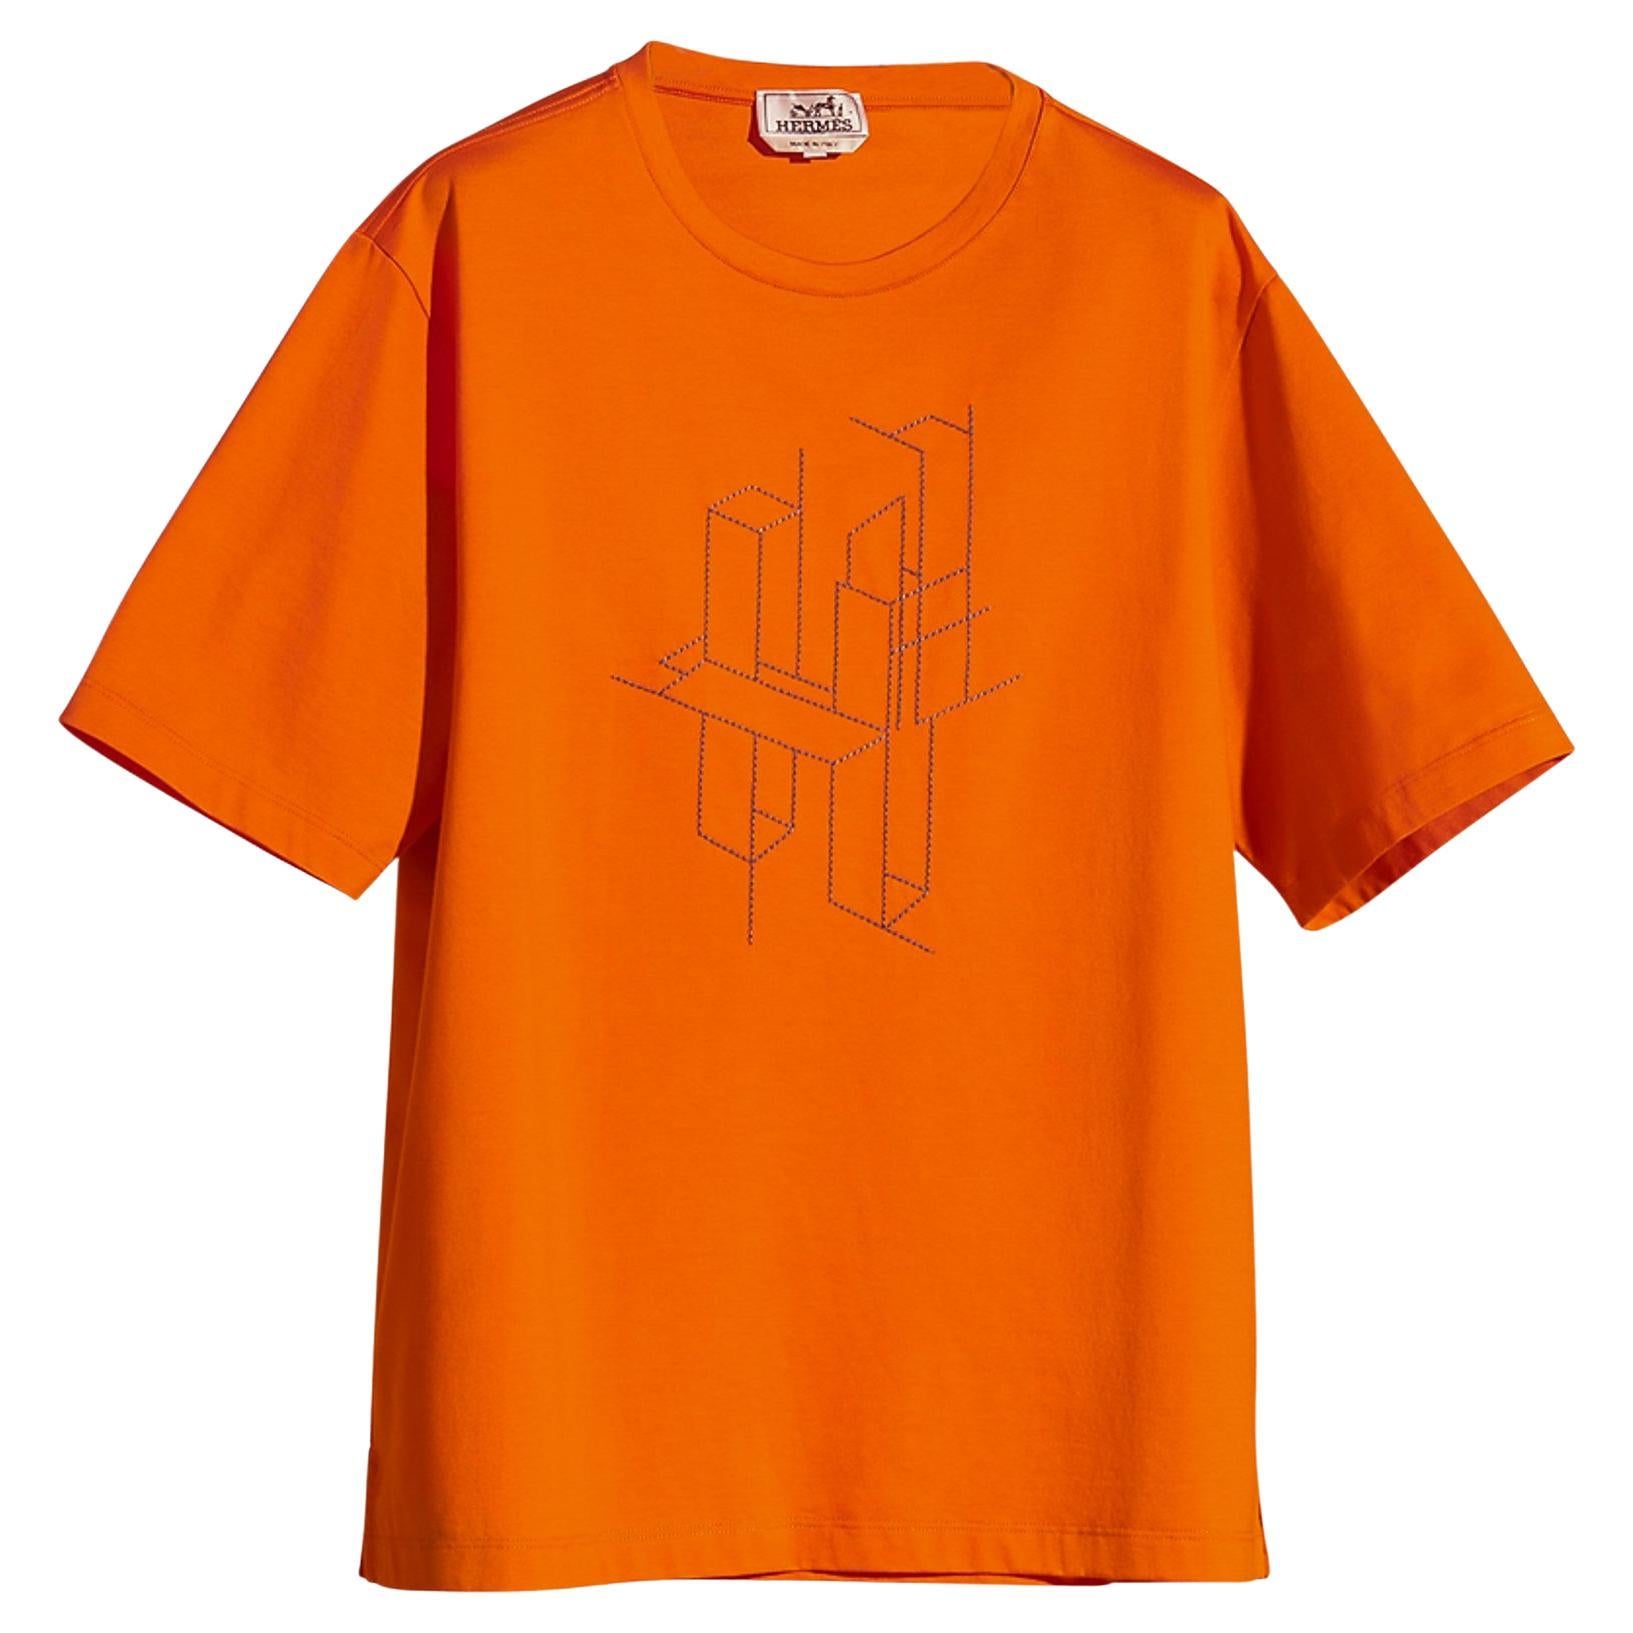 Hermes Shirt - 163 For Sale on 1stDibs | hermes t shirt, hermes 